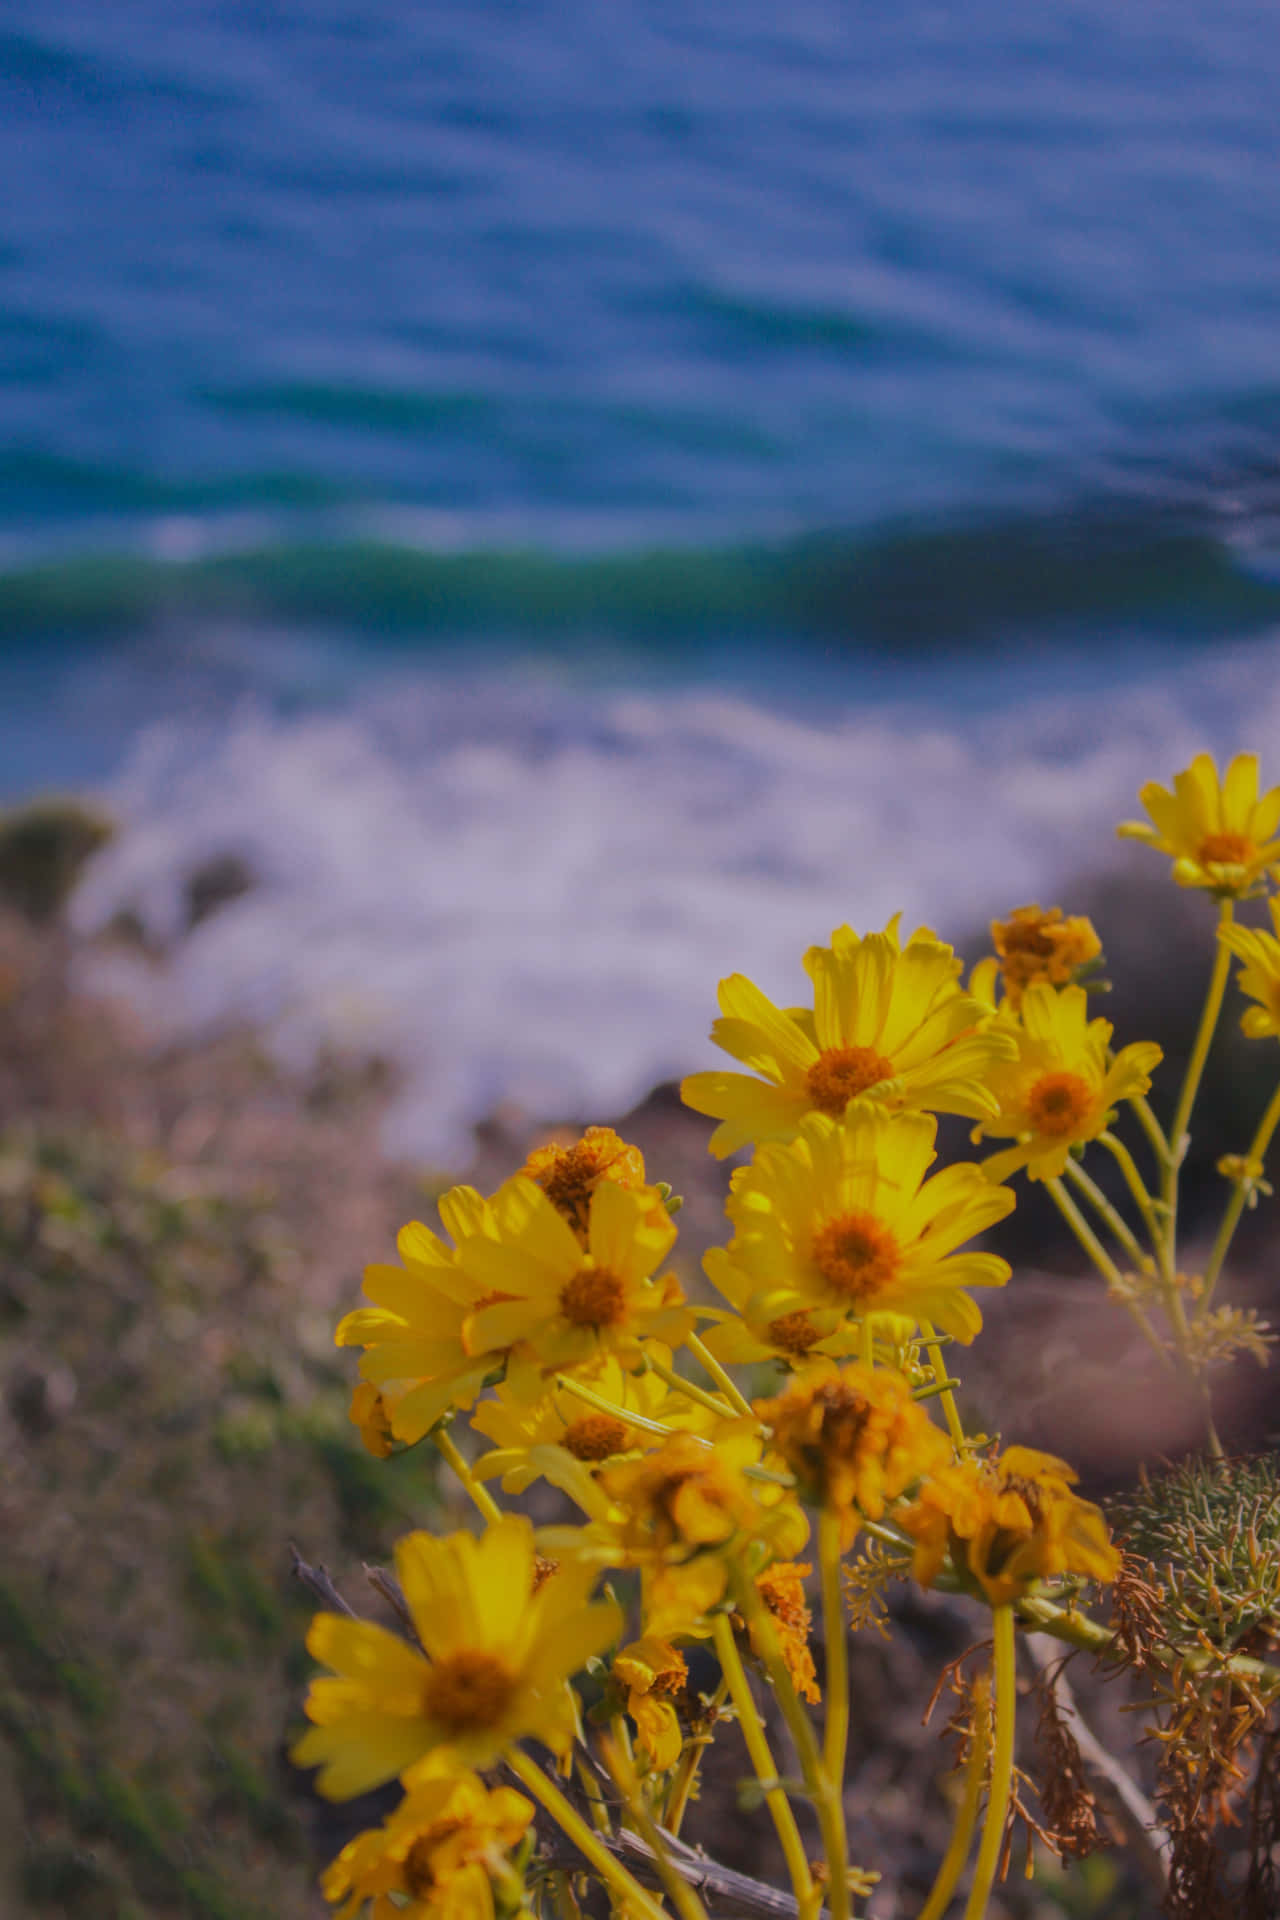 Iphonex Malibu Hintergrund Mit Brittlebush Blume.